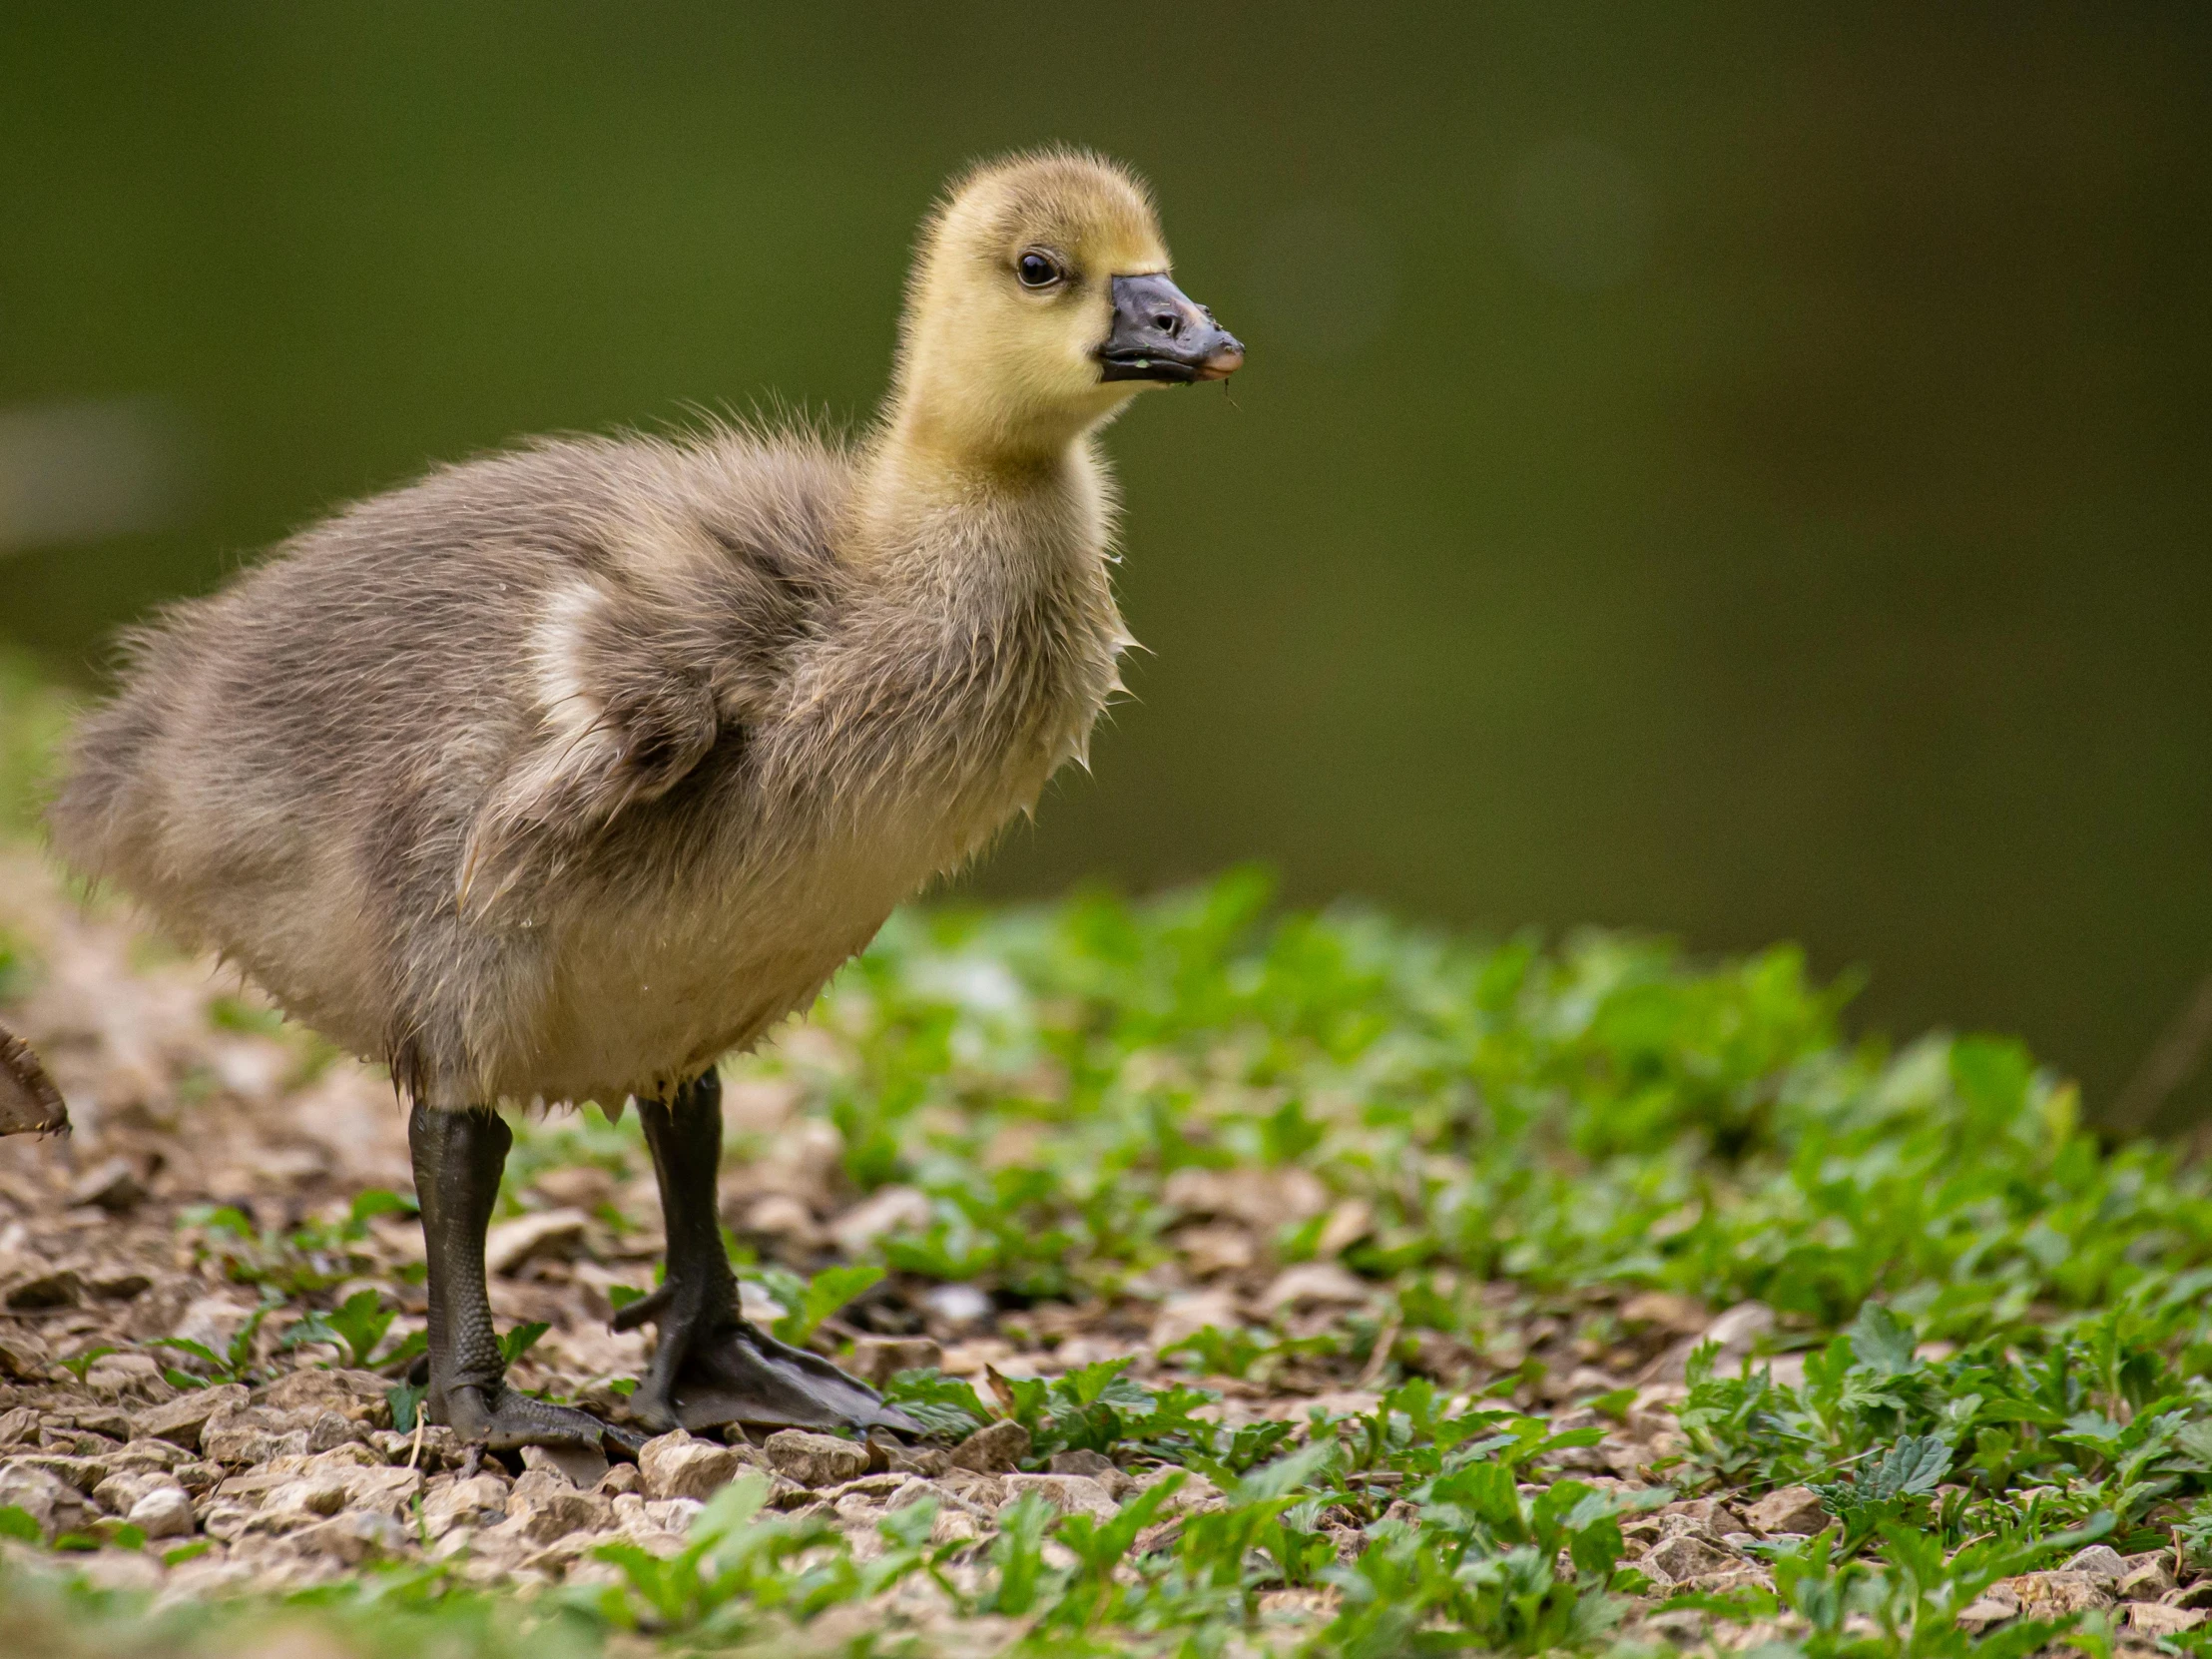 a little duck standing on some green grass